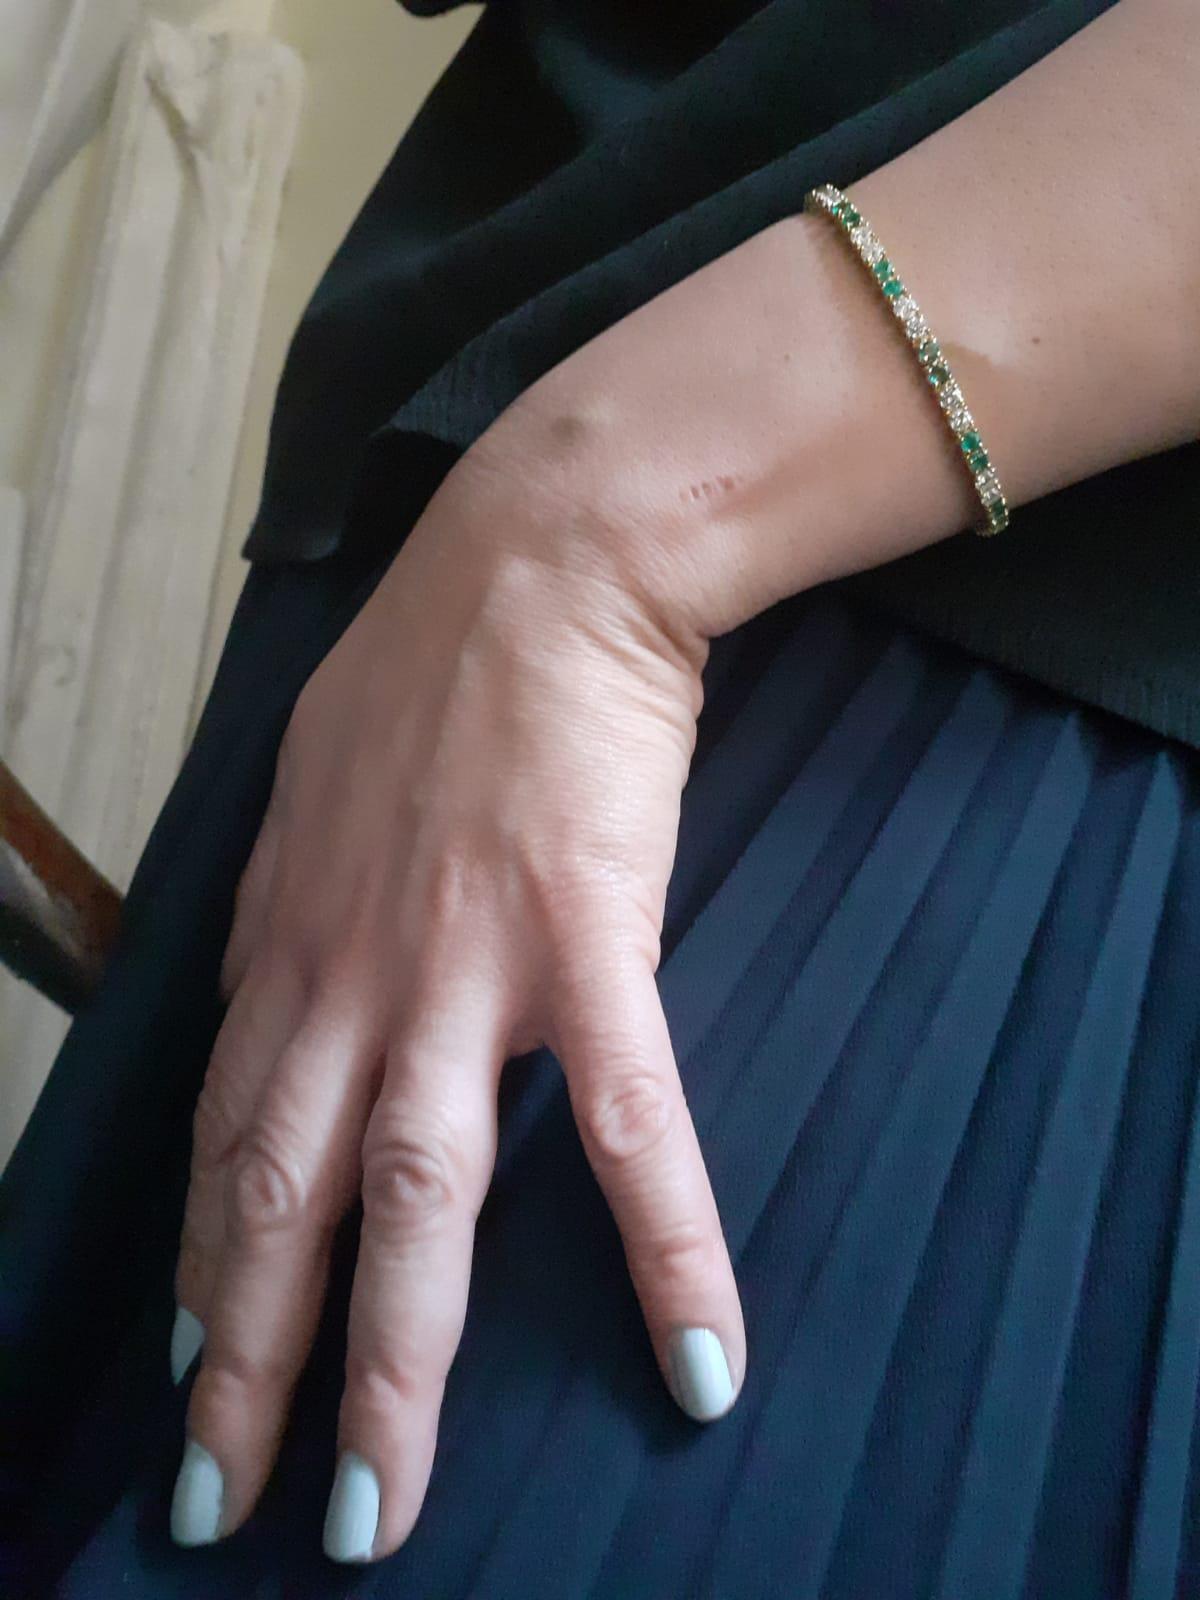 van cleef emerald bracelet